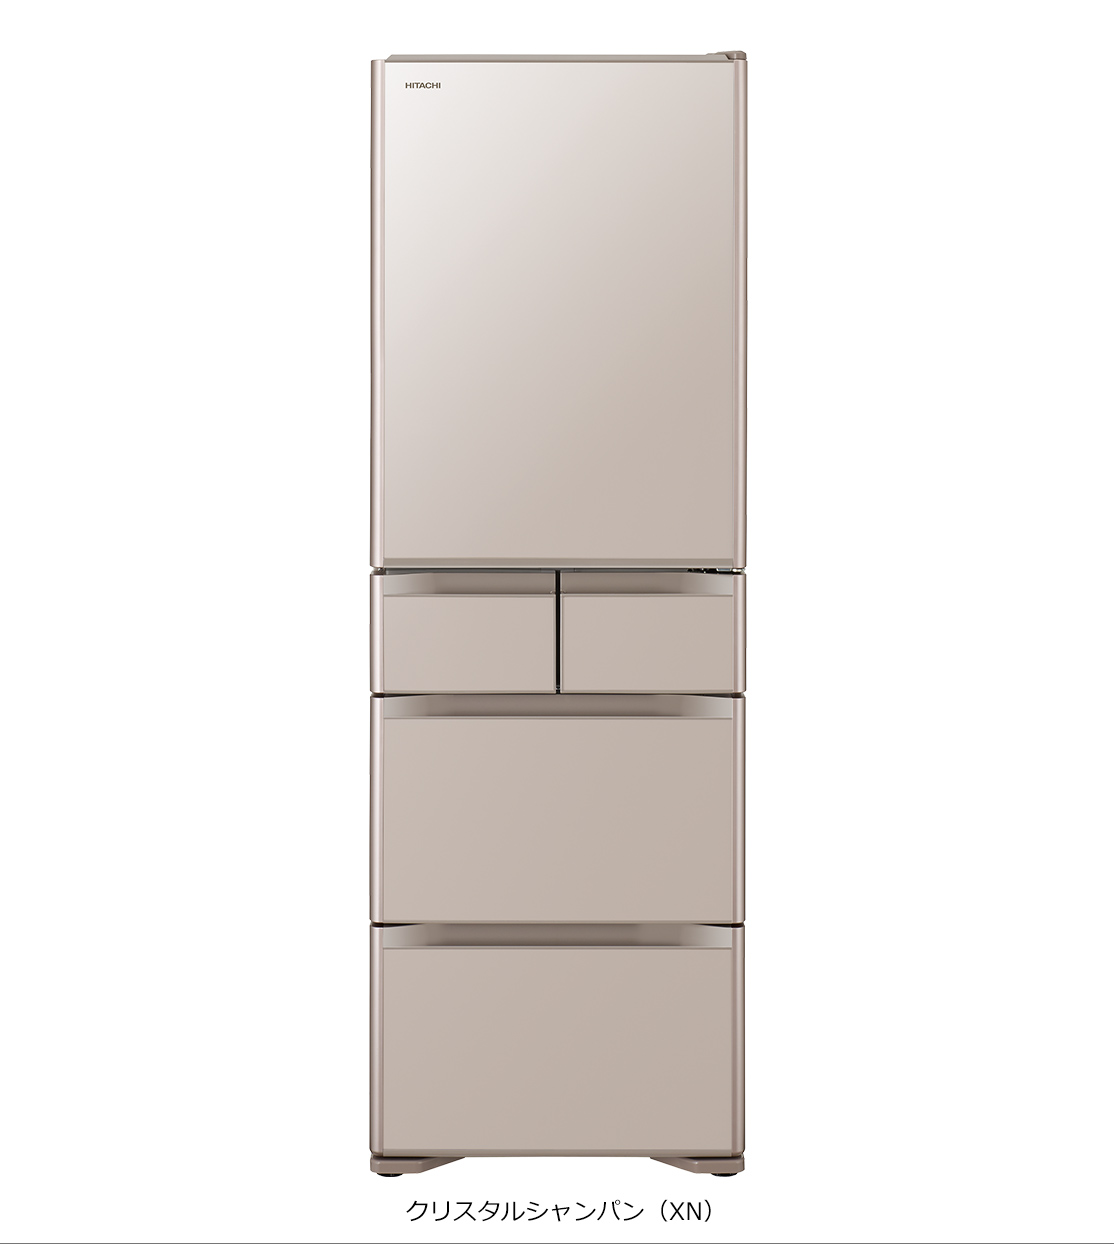 仕様：Sシリーズ ： 冷蔵庫 ： 日立の家電品